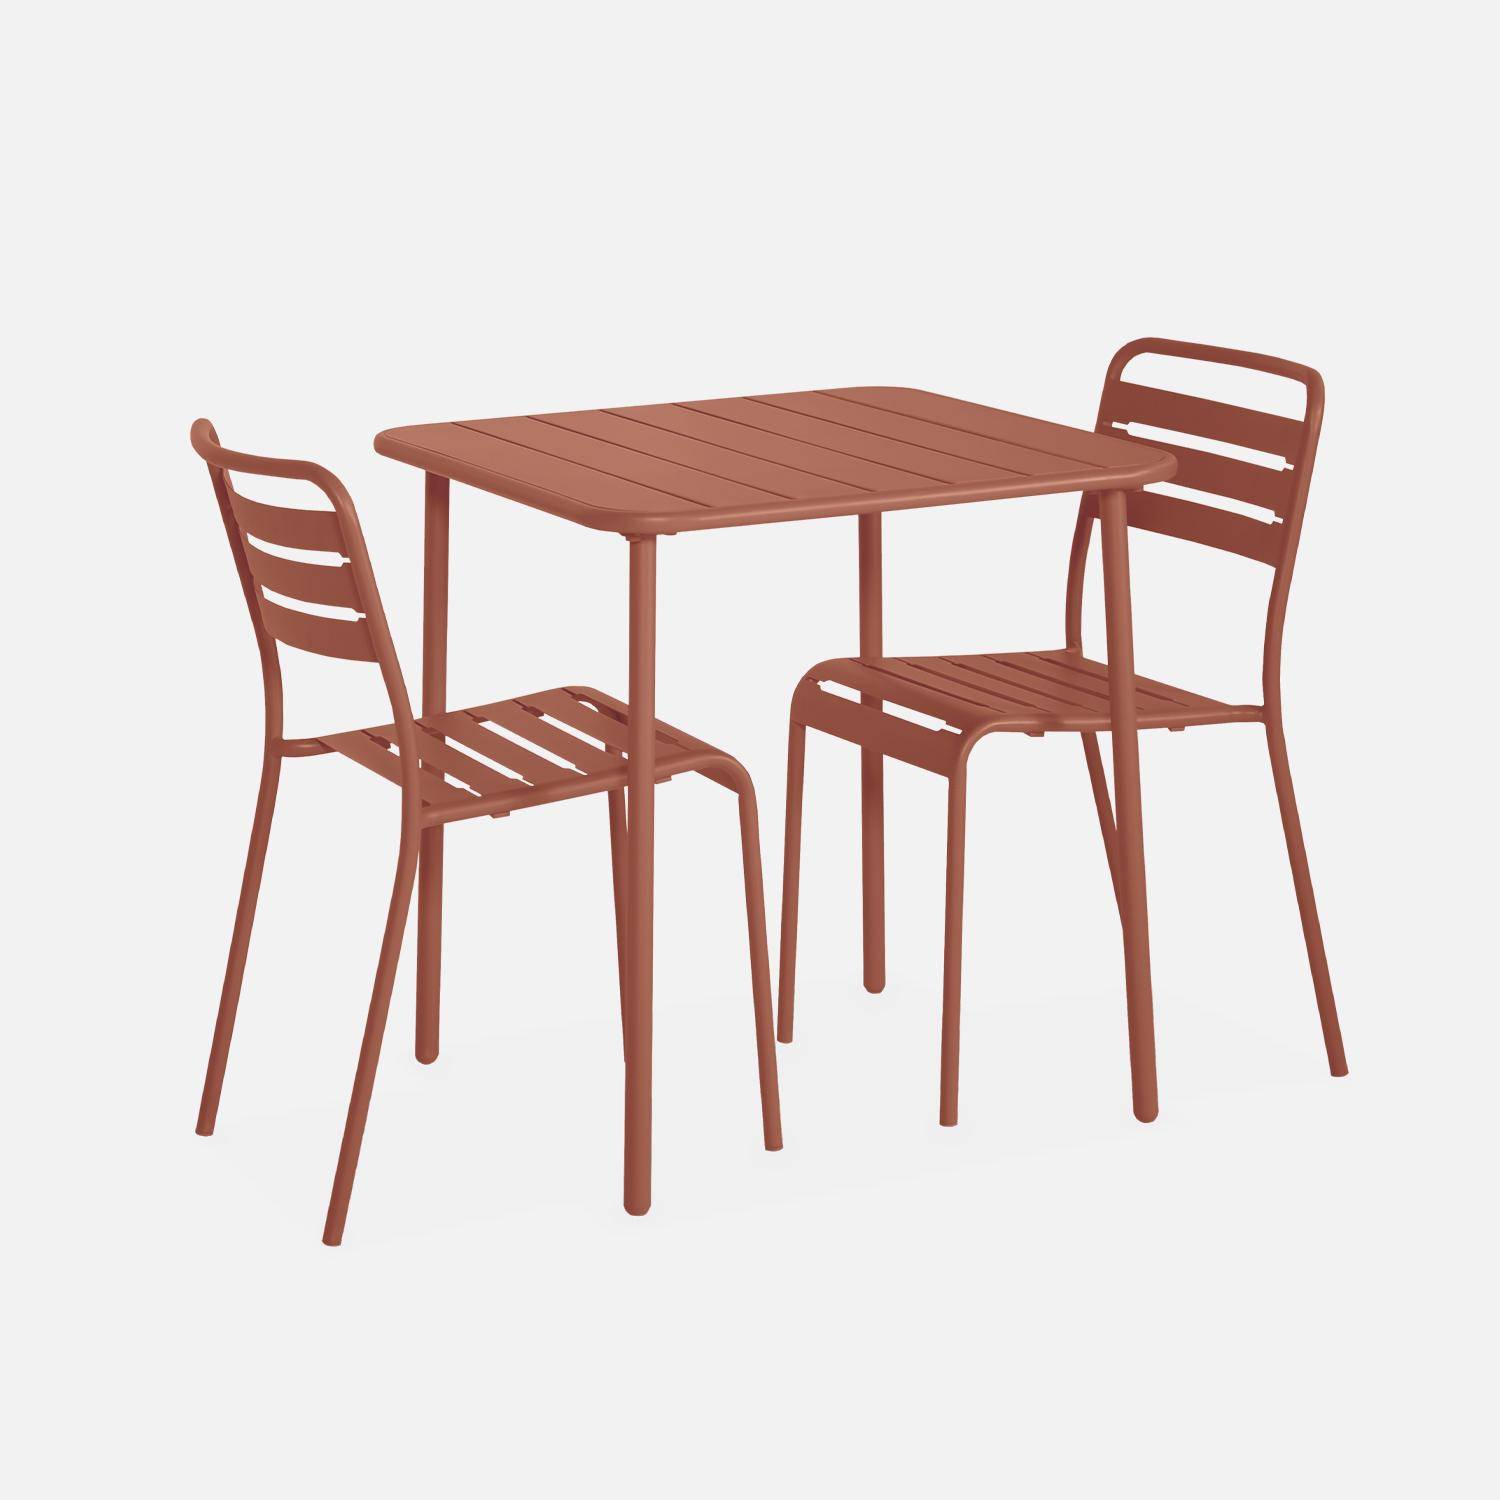 Metall-Gartentisch mit 2 Stühlen, 2 Personen, Amelia Terrakotta 70 x 70 cm Photo4